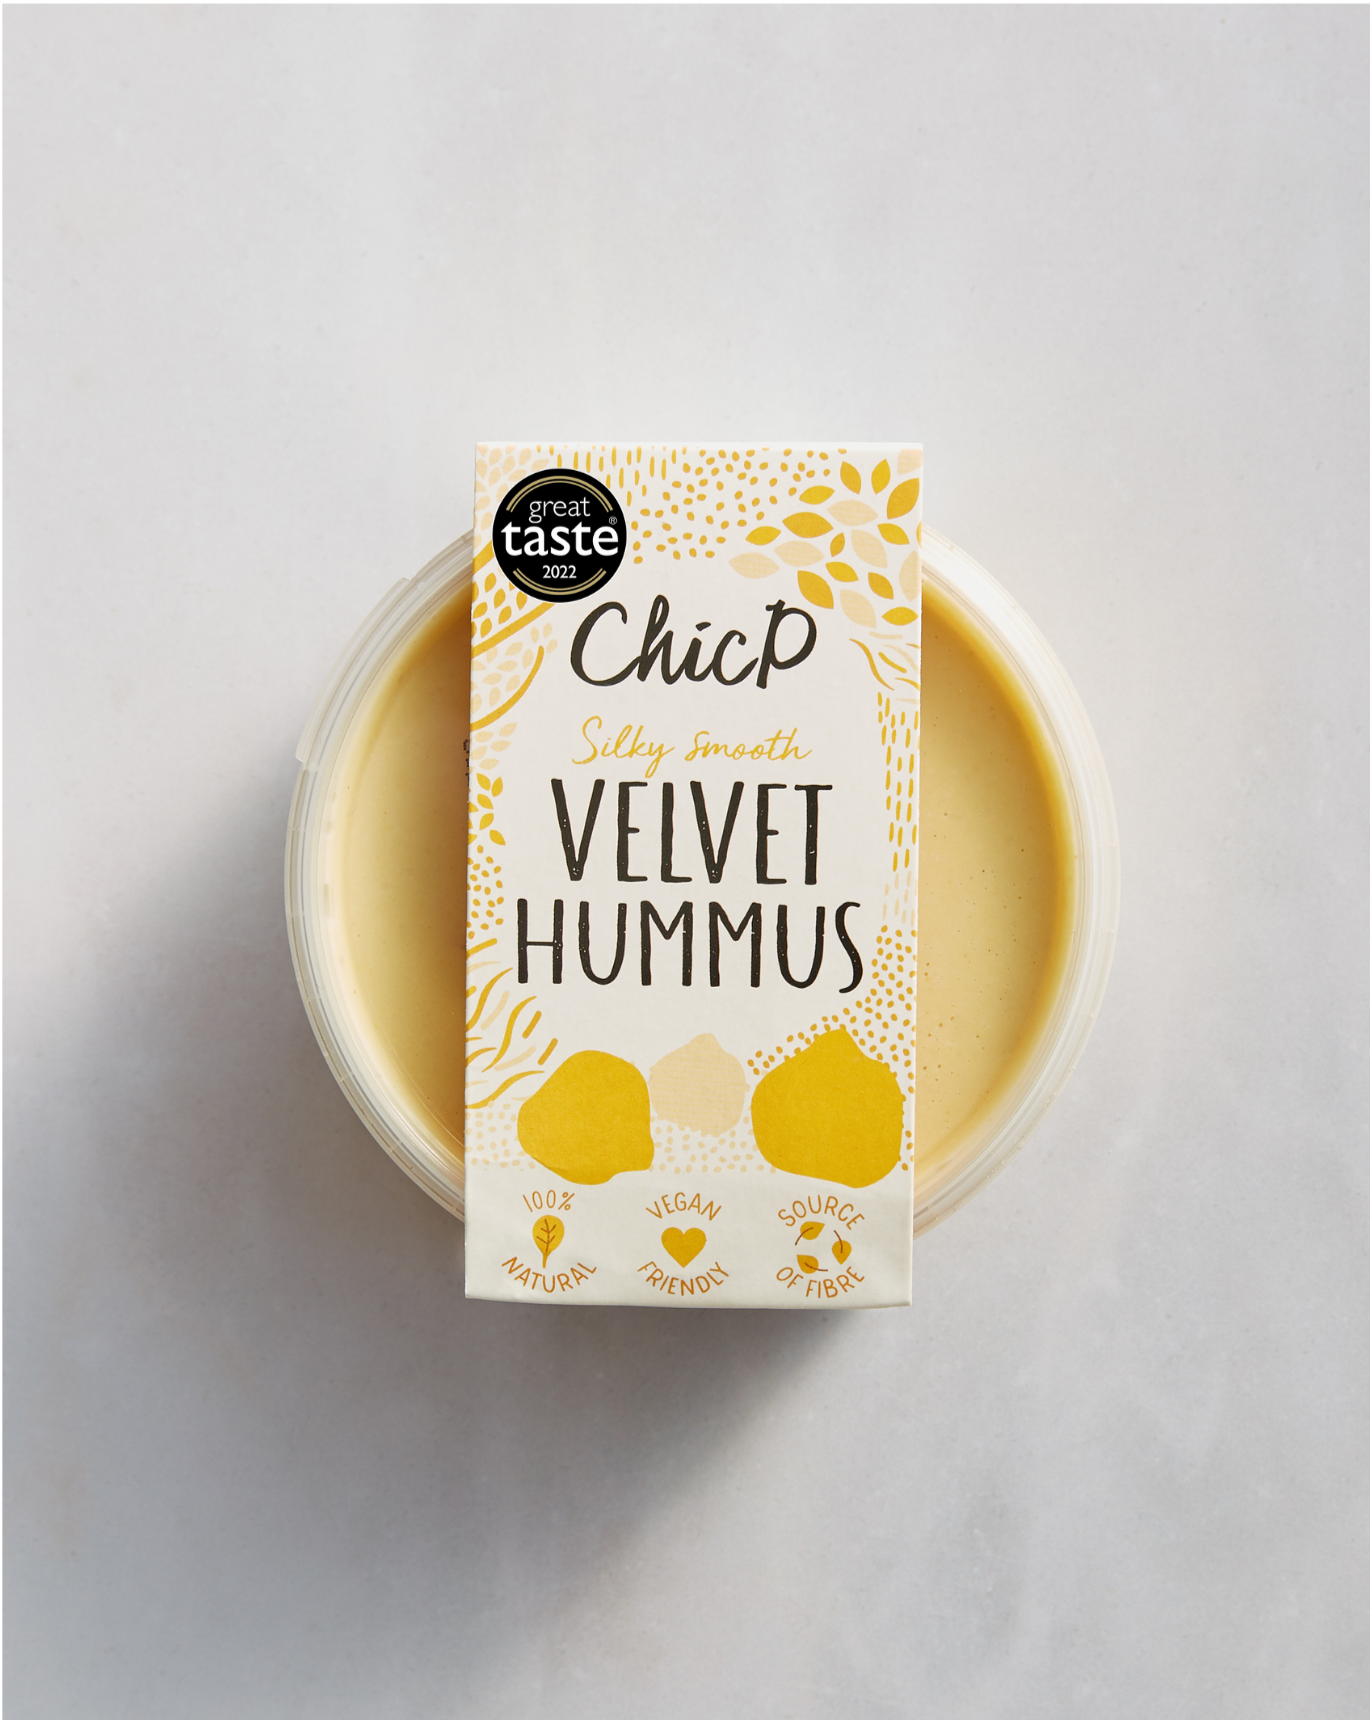 Velvet Hummus